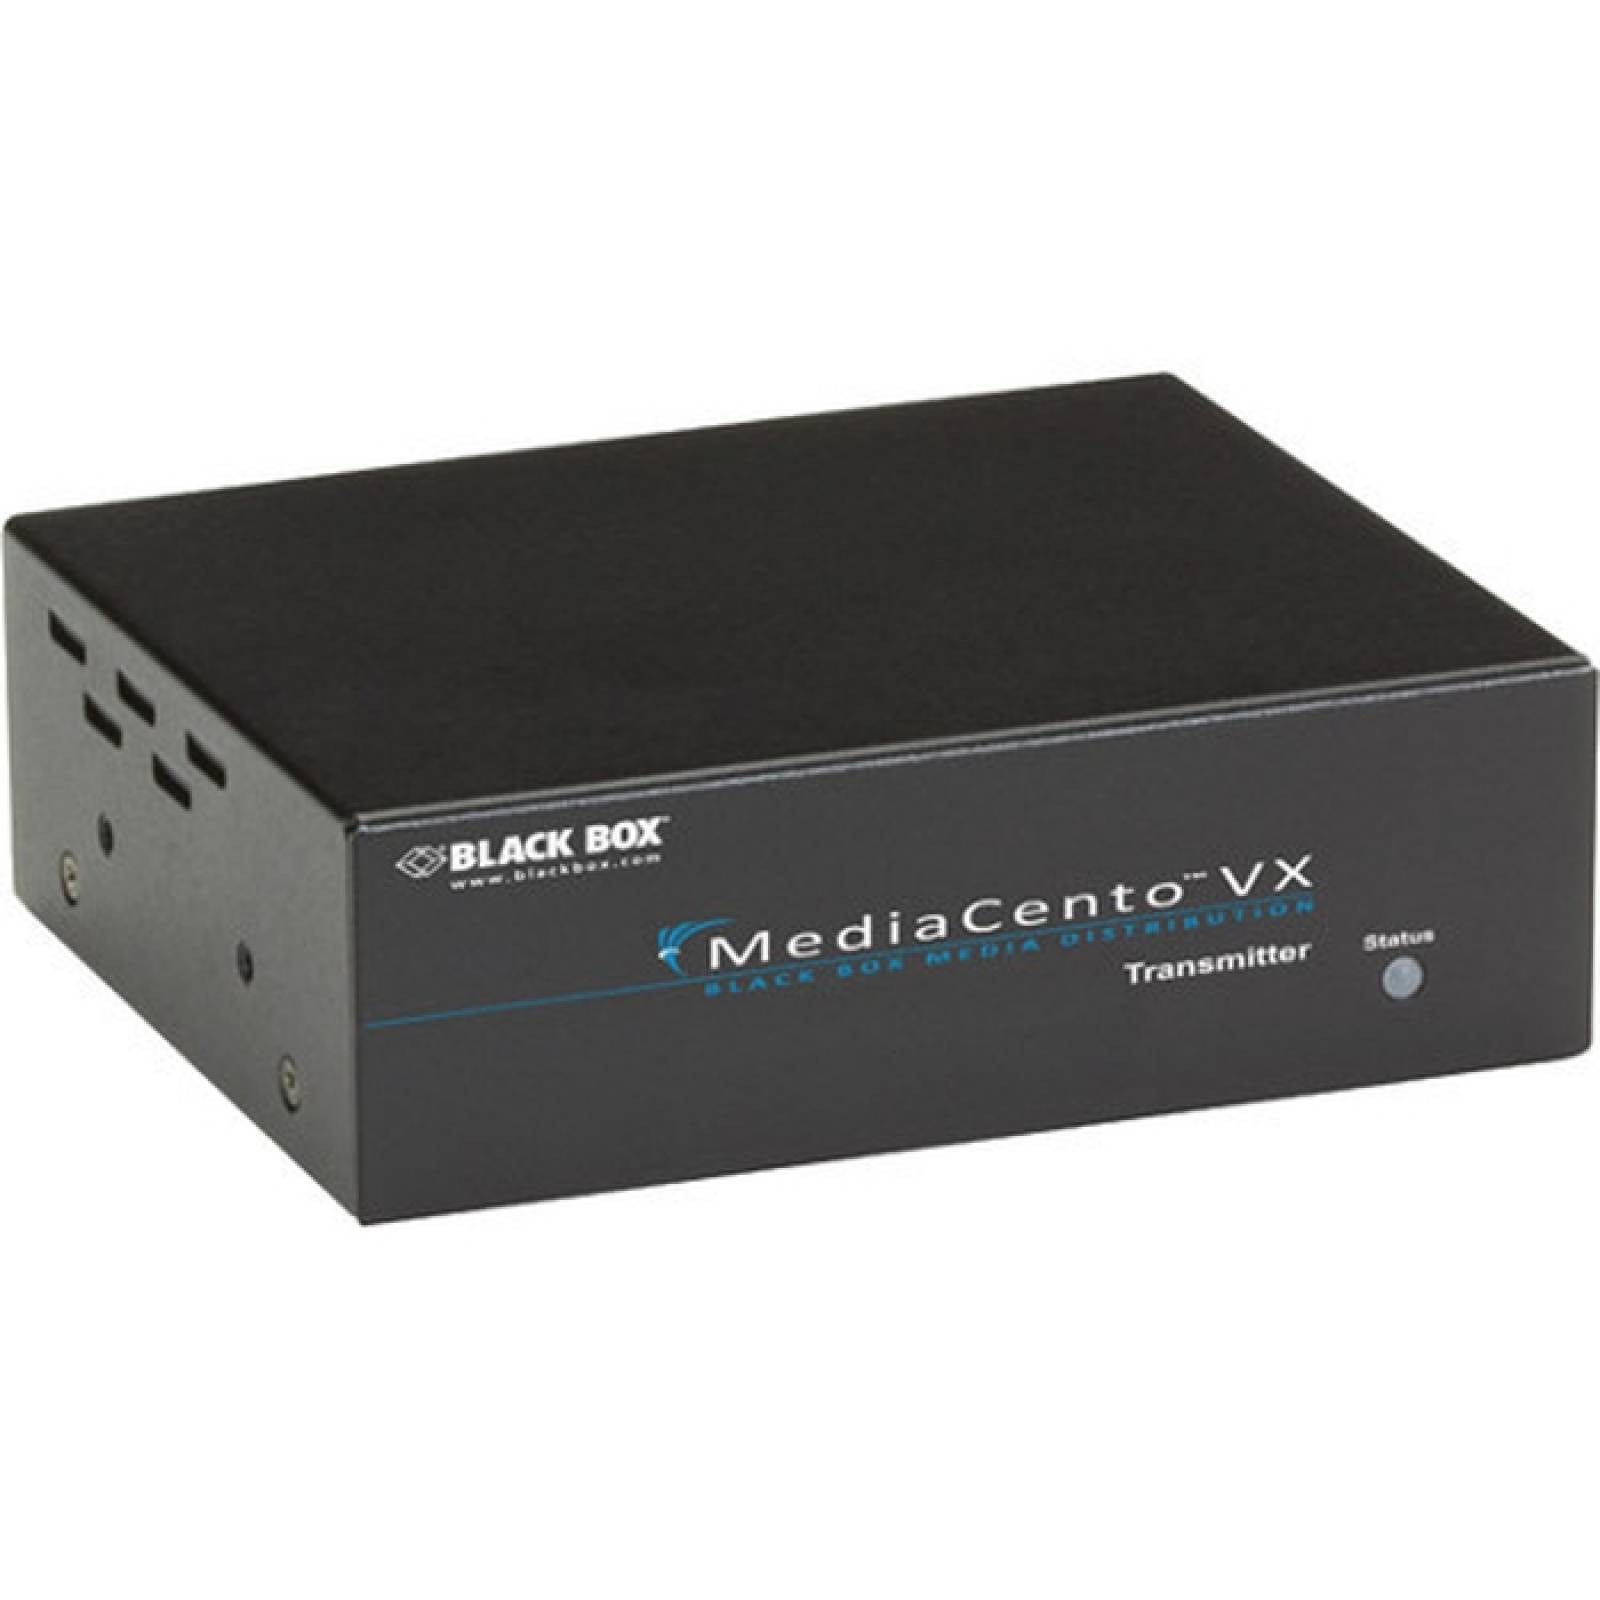 Black Box MediaCento VX Transmisor de un solo puerto